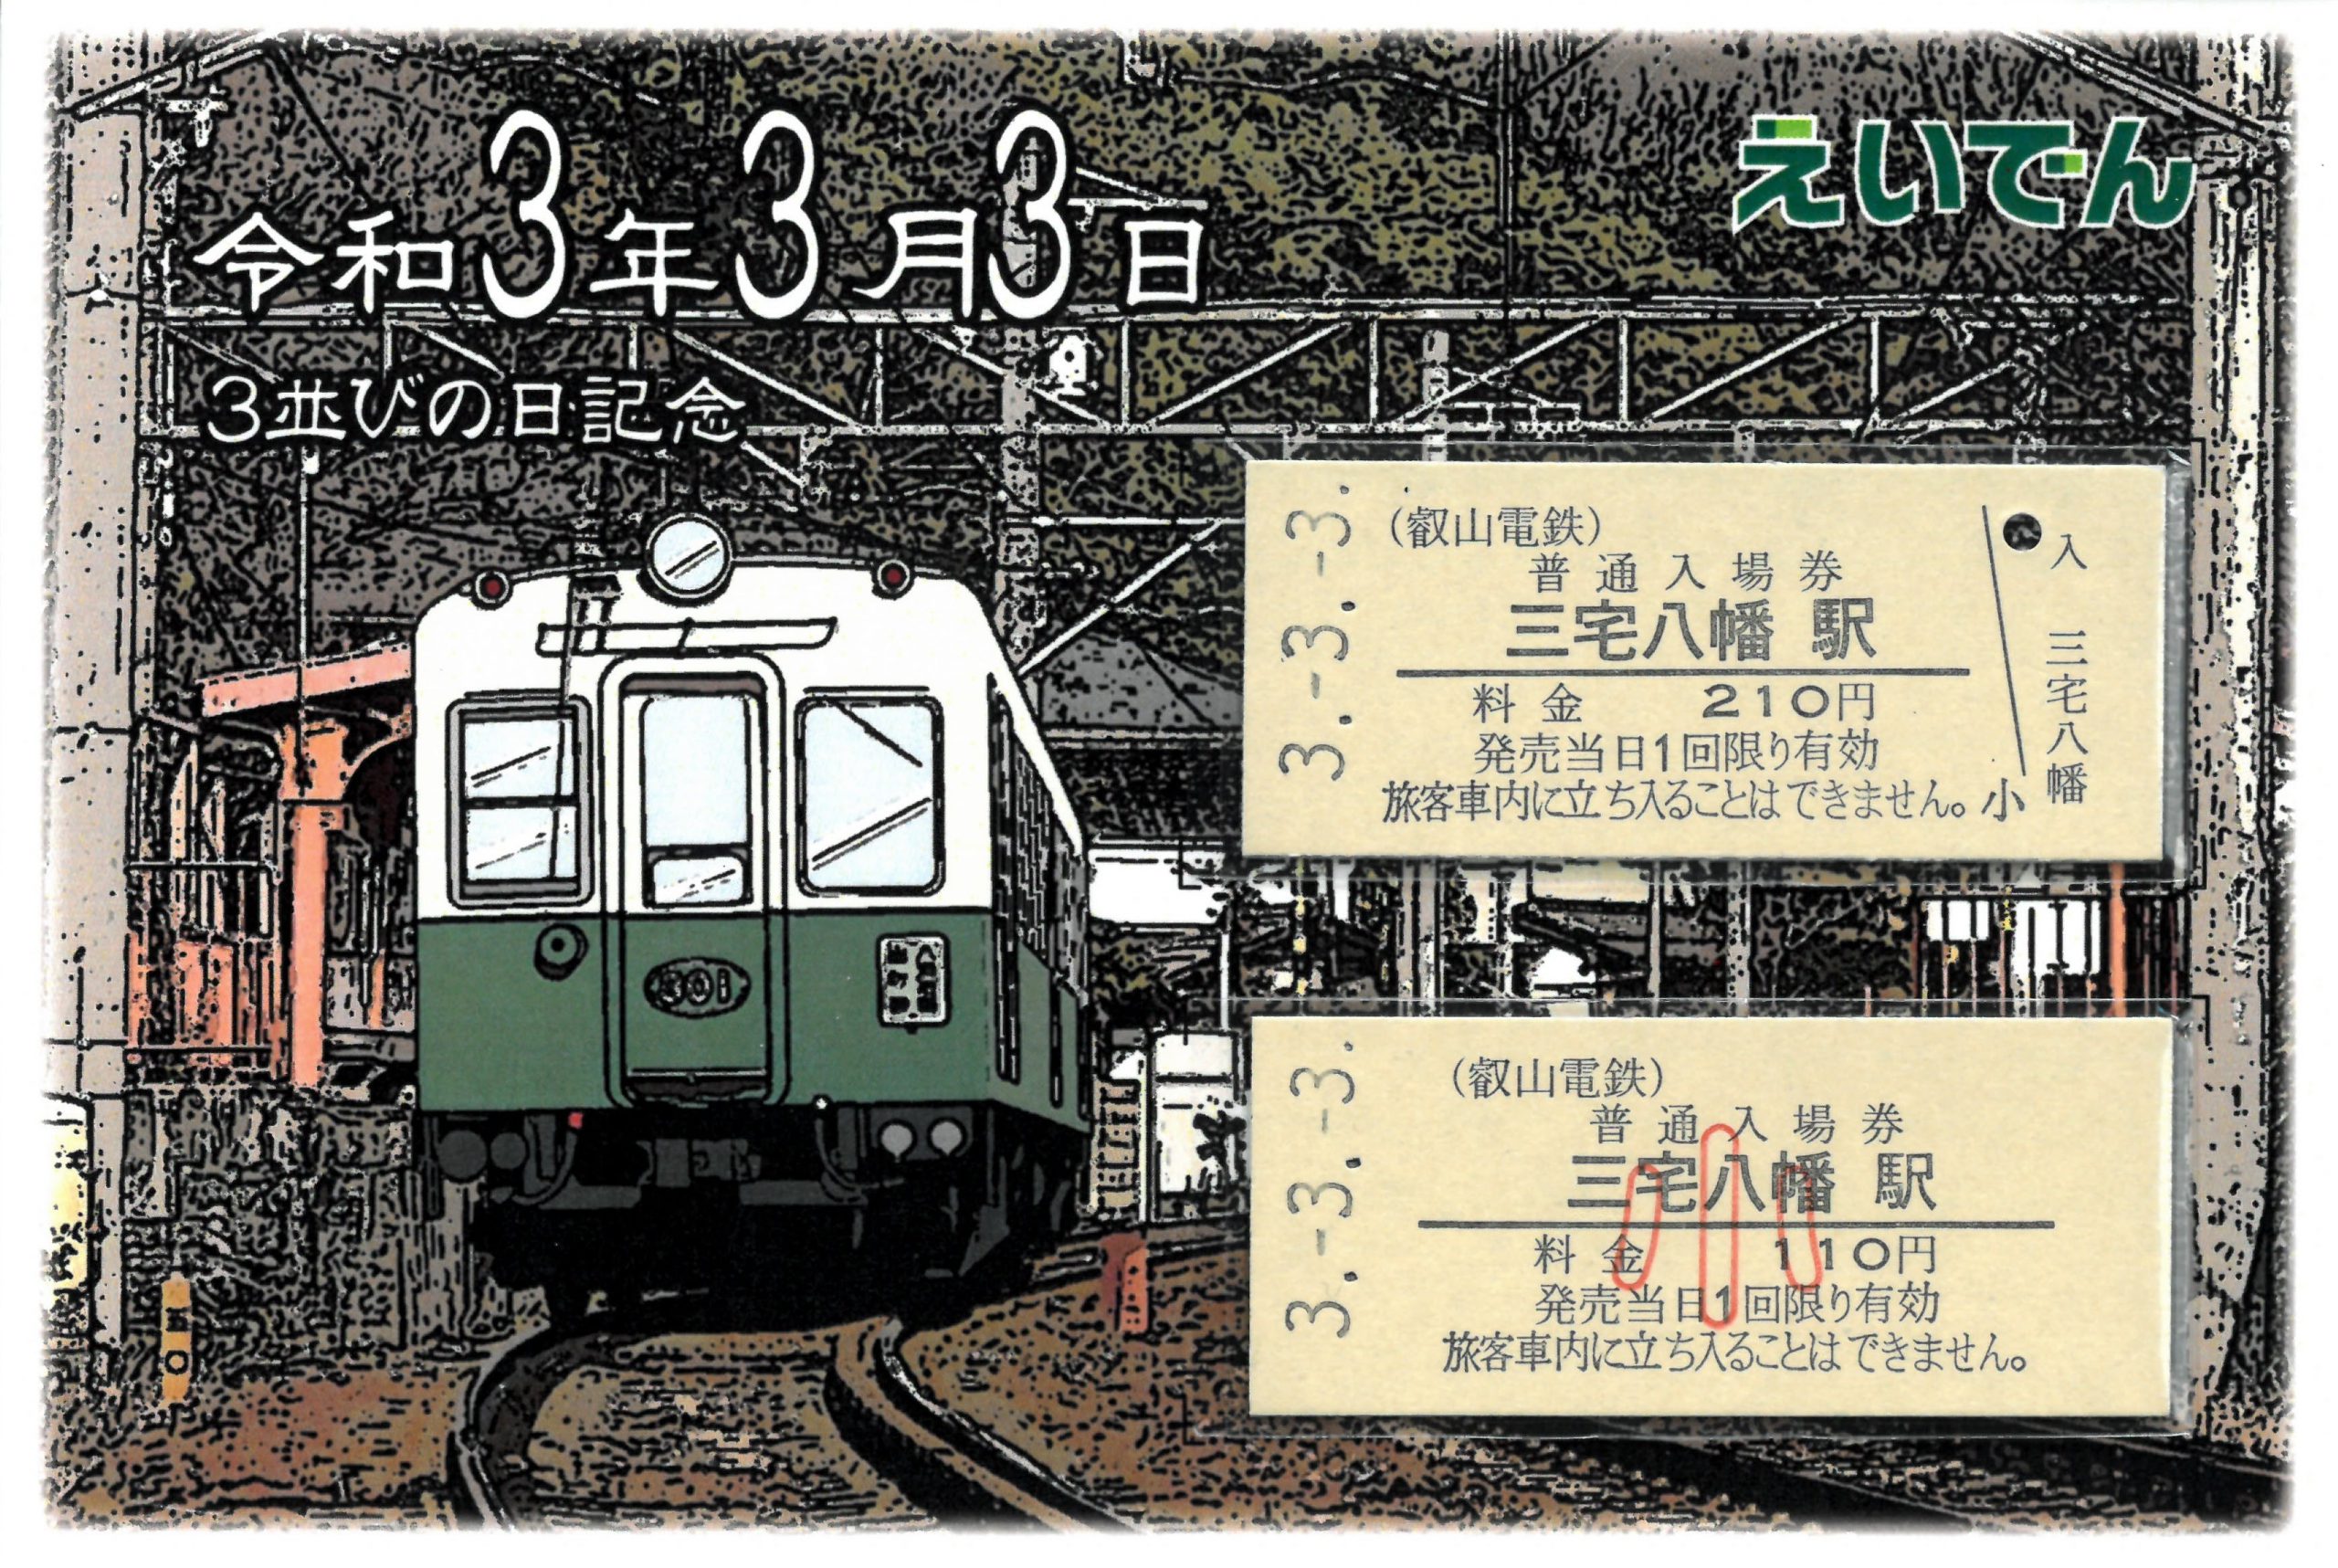 叡山電鉄「3並び記念硬券入場券セット」 | 鉄道ホビダス